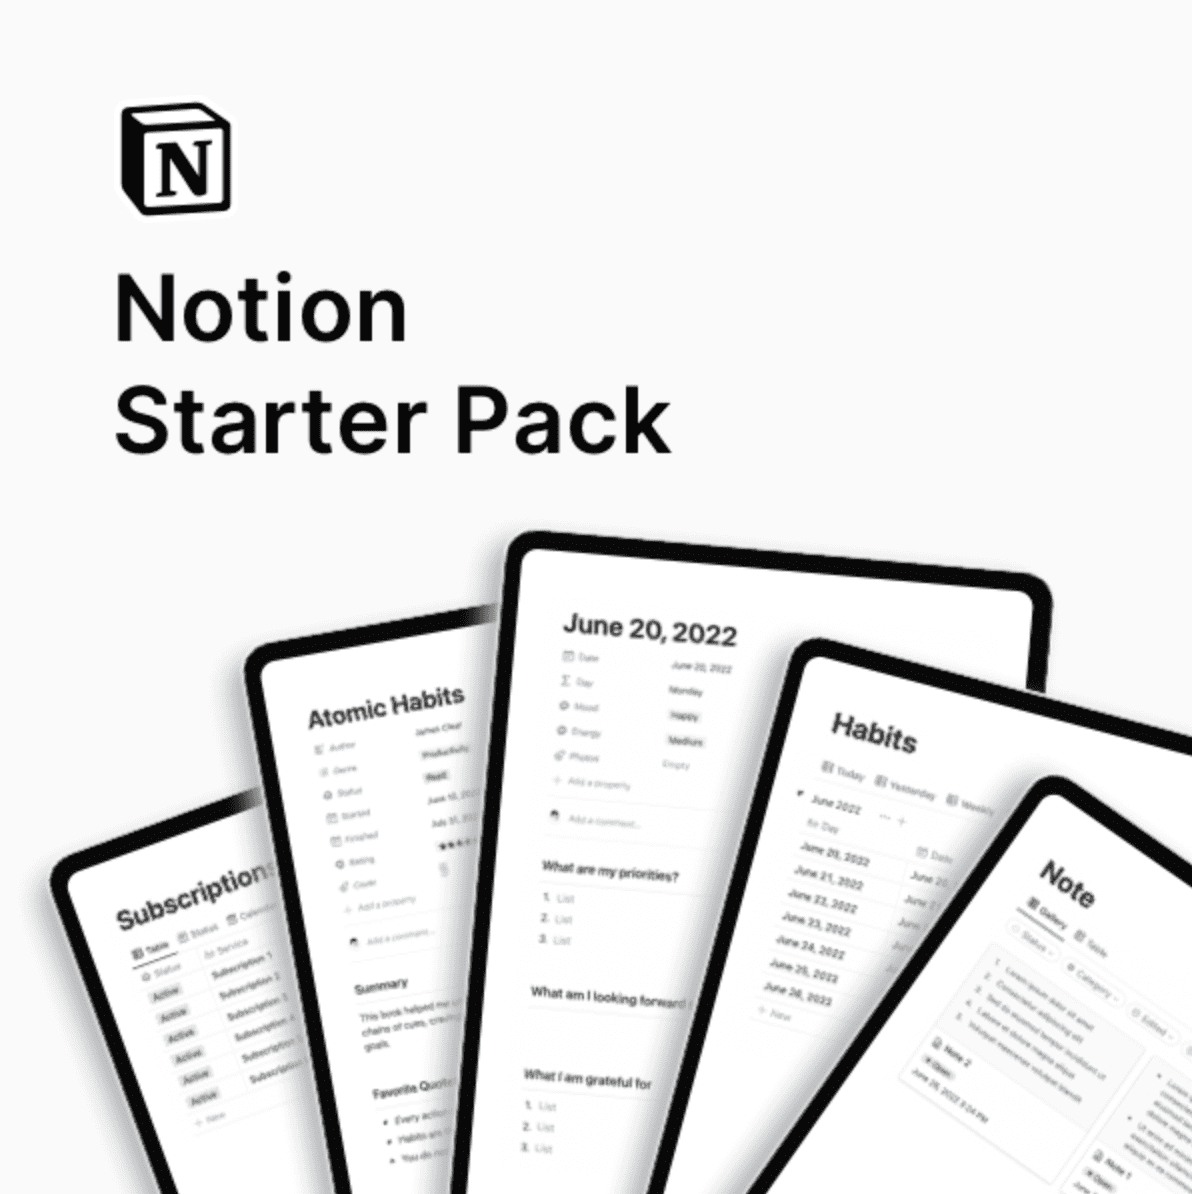 Notion Starter Pack